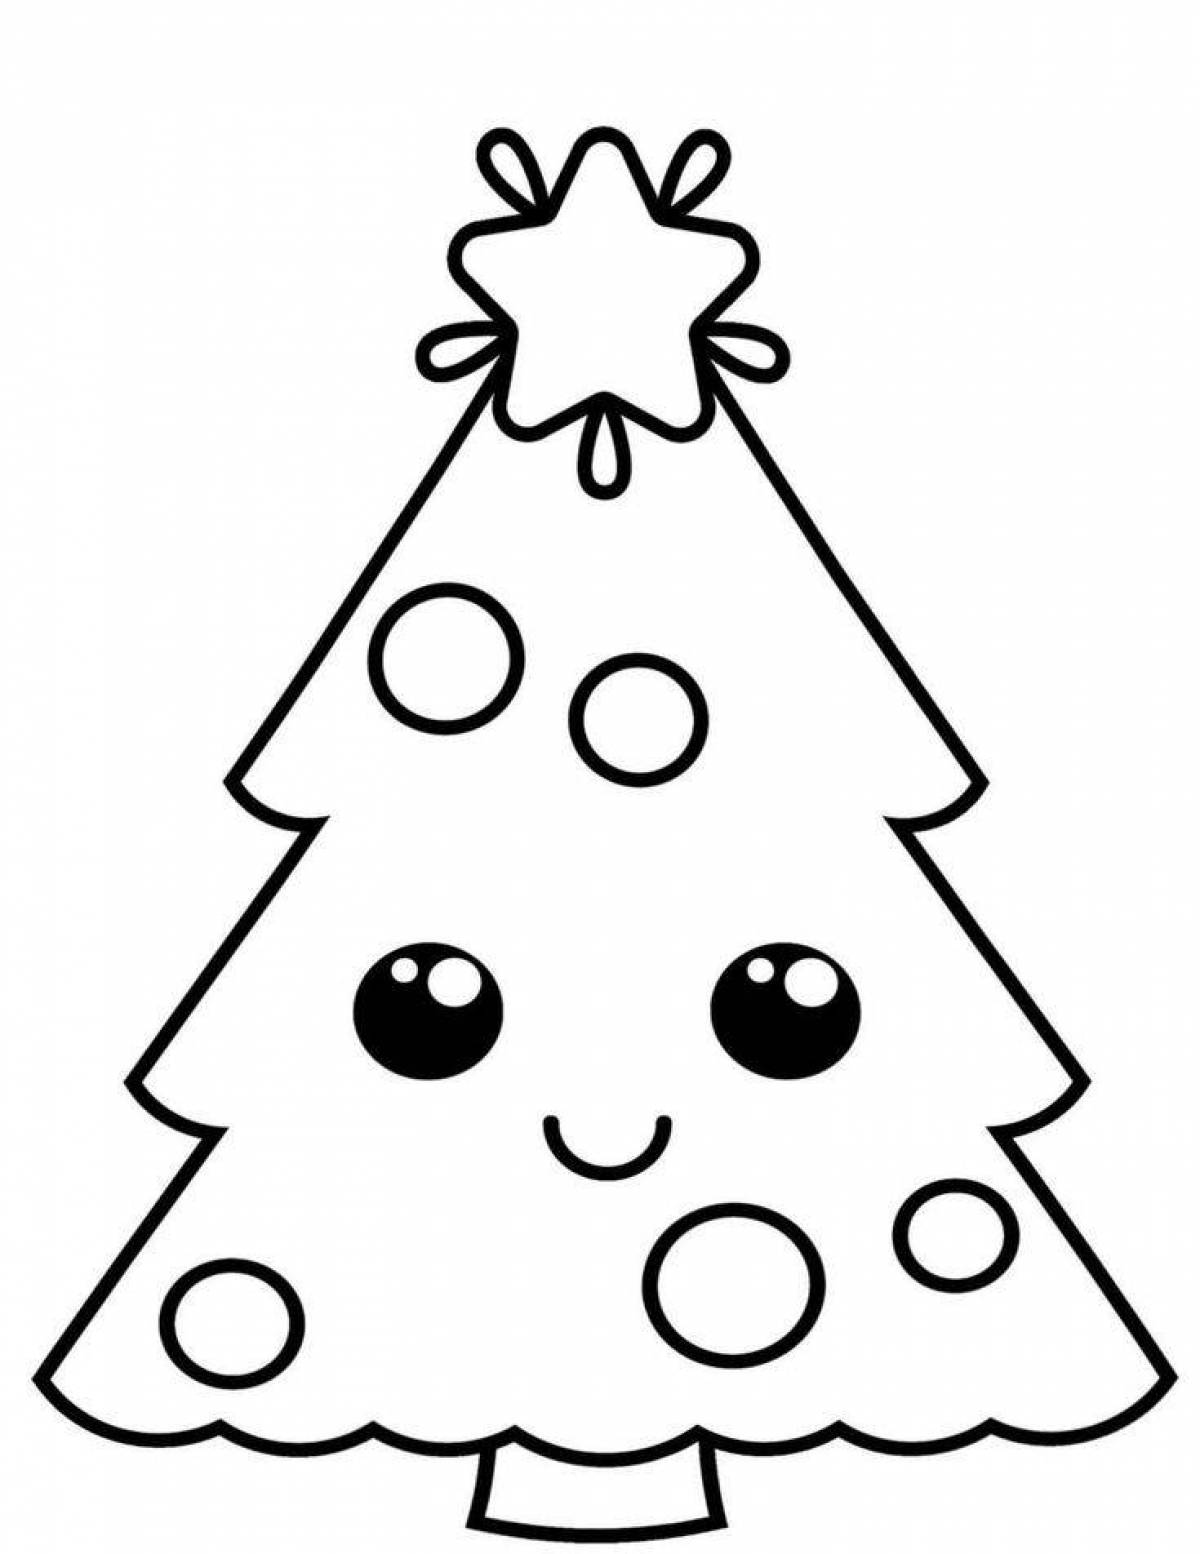 Раскраска великолепная новогодняя елка для детей 3-4 лет